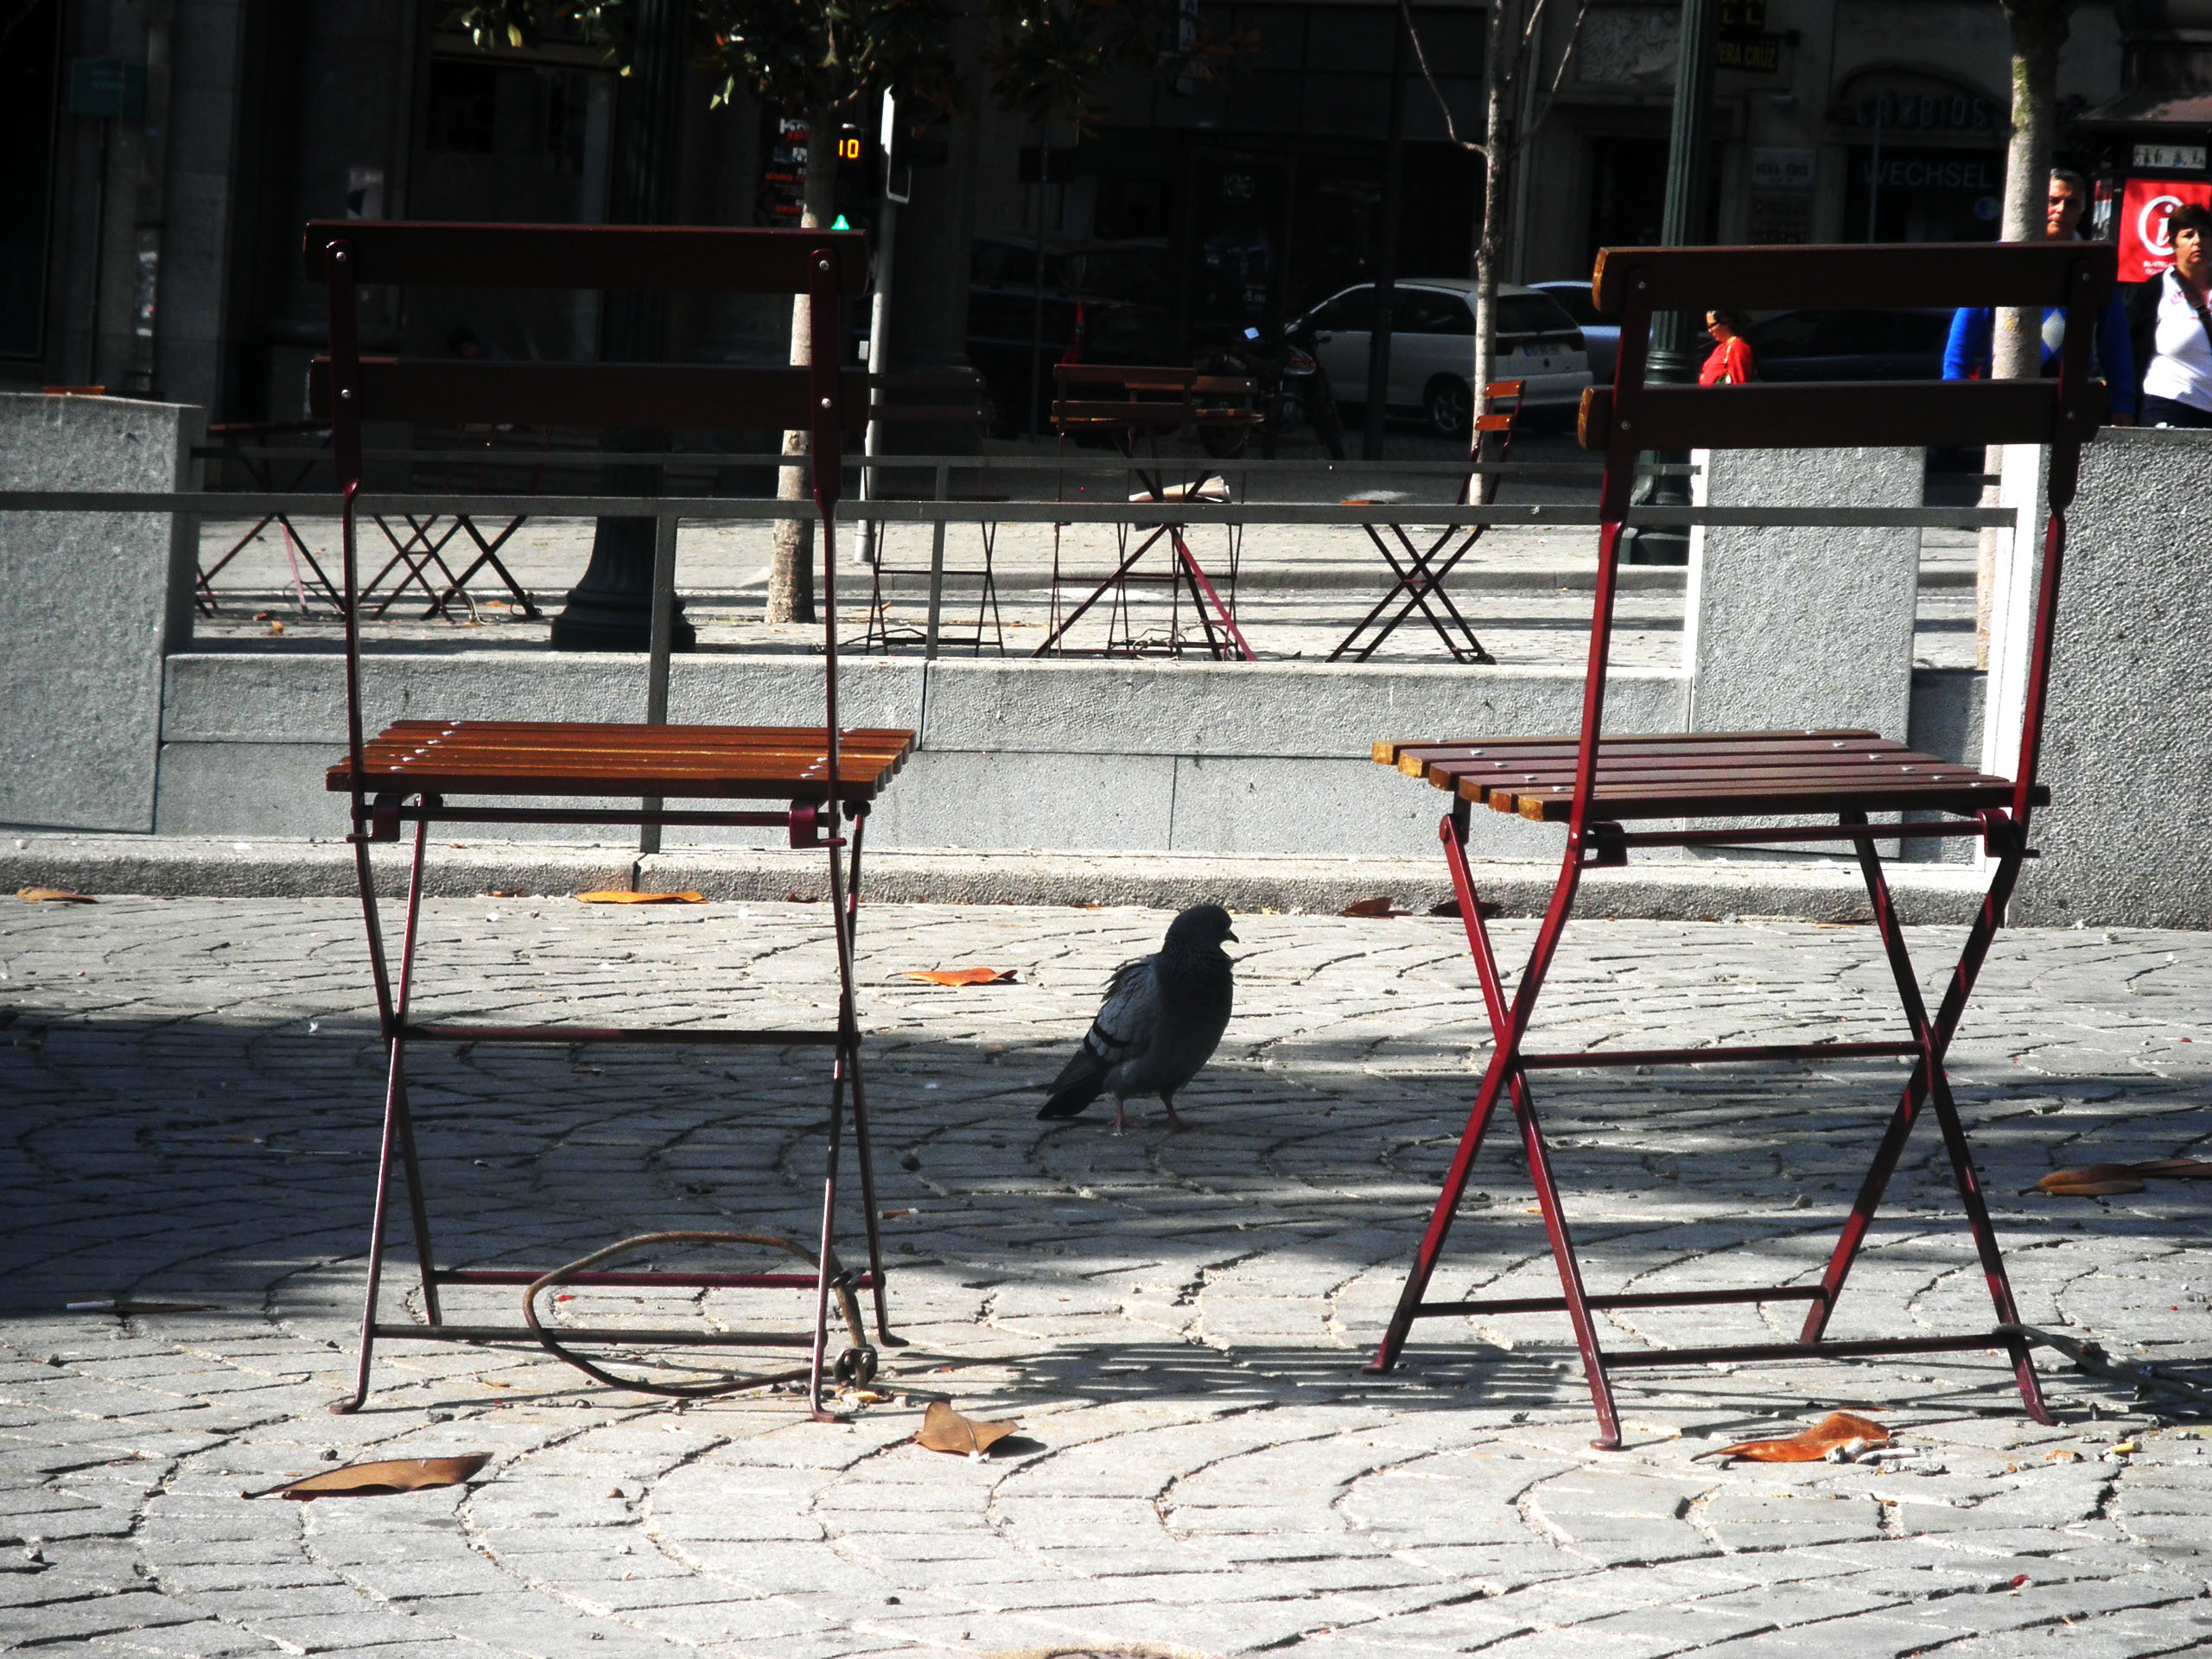 “Cadeiras presas às histórias, aos olhares, à gente do Porto”